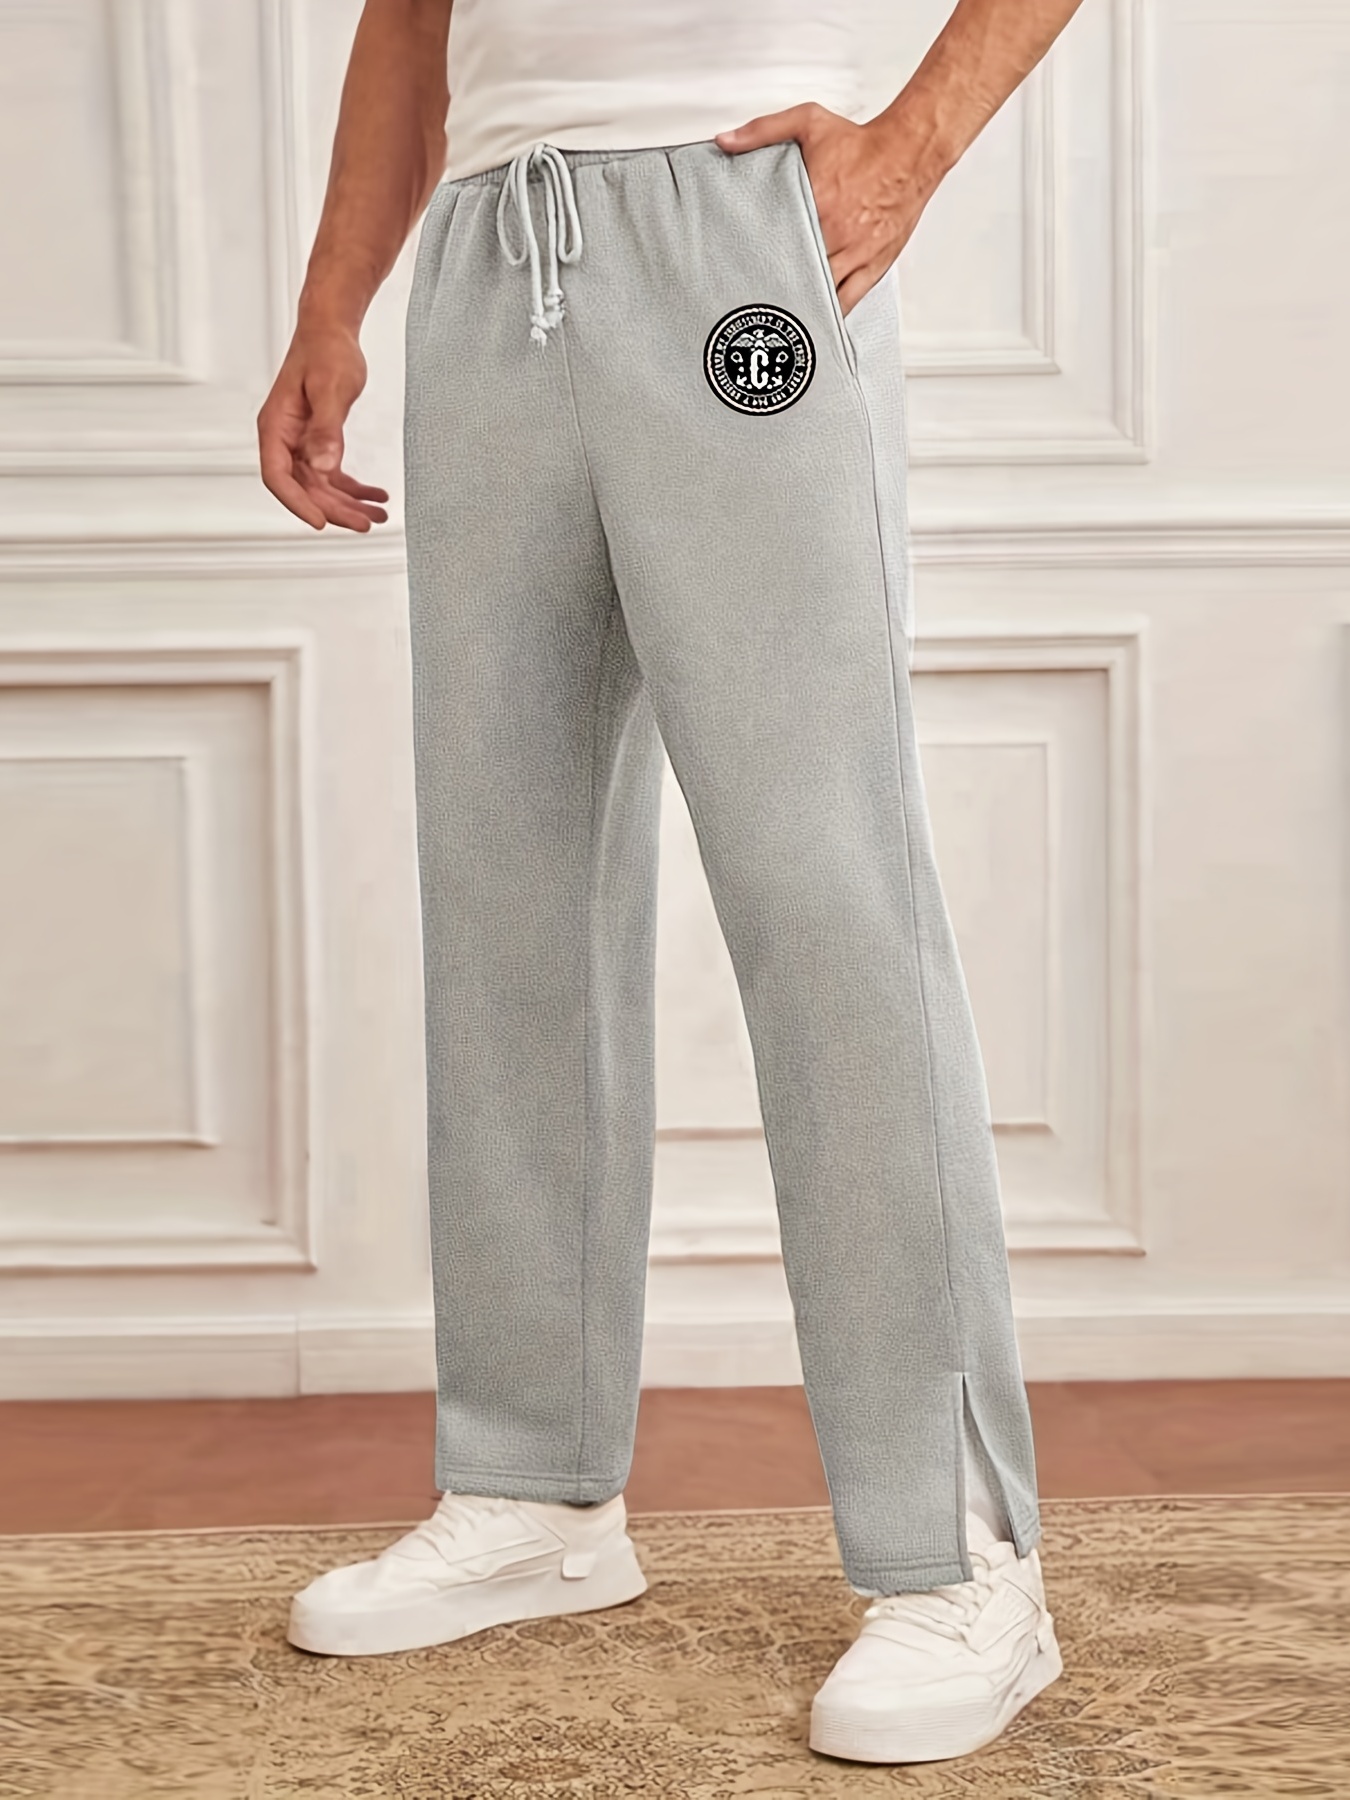  Mens Pajama Pants Plus Size Pajama Bottoms Lightweight